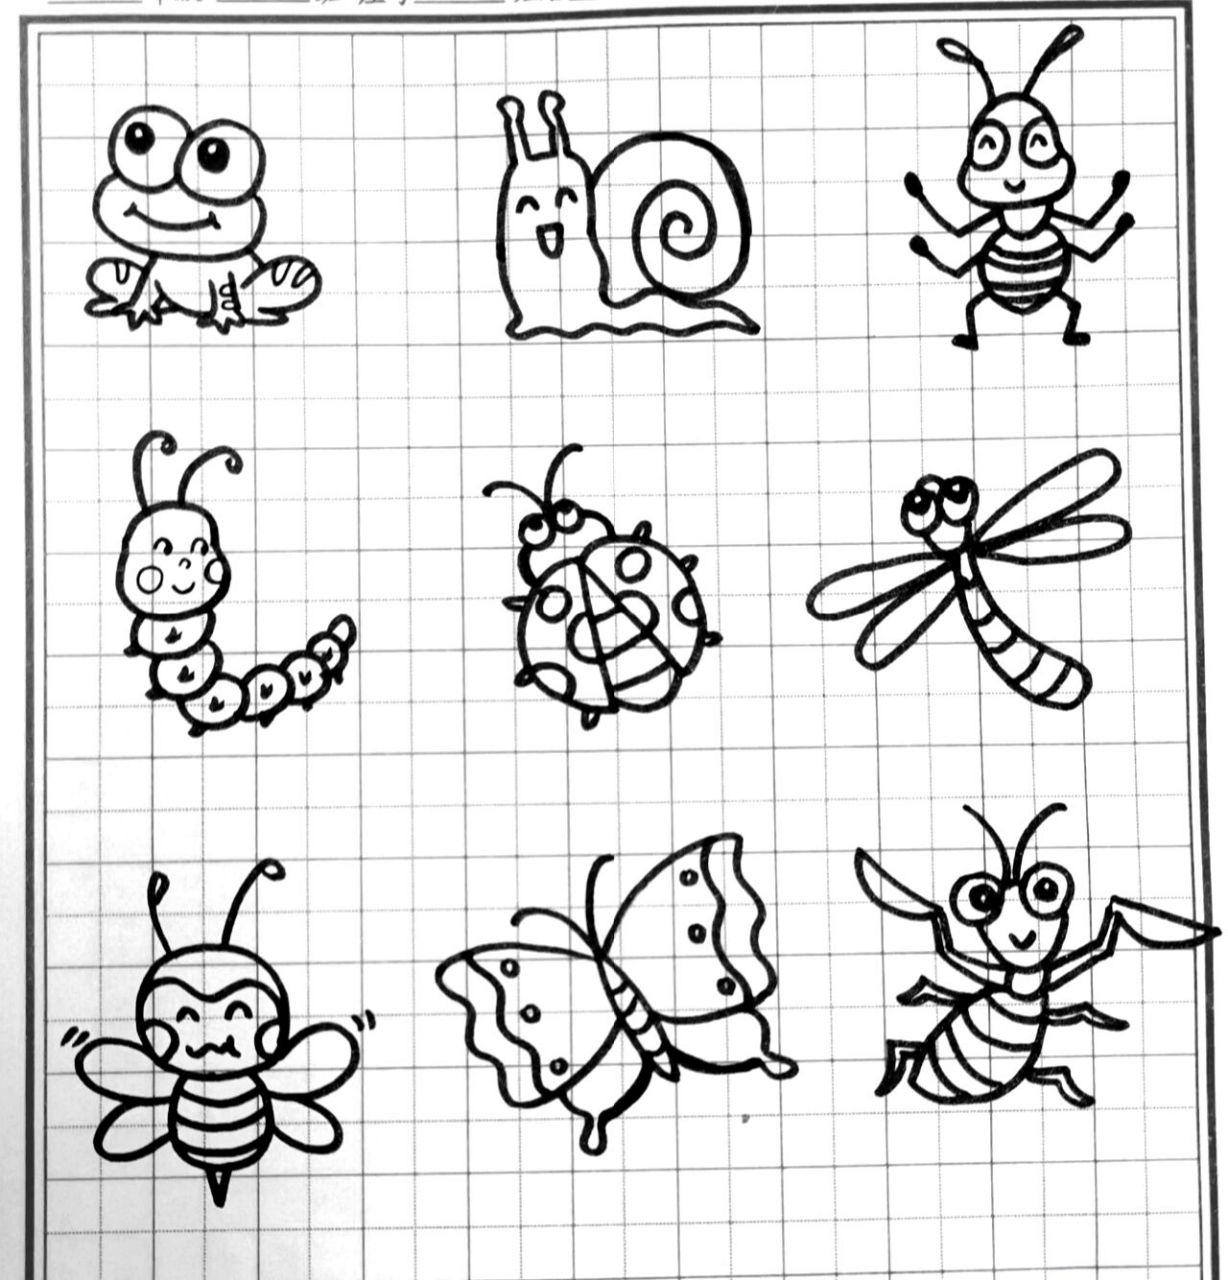 画一幅昆虫的画简笔画图片